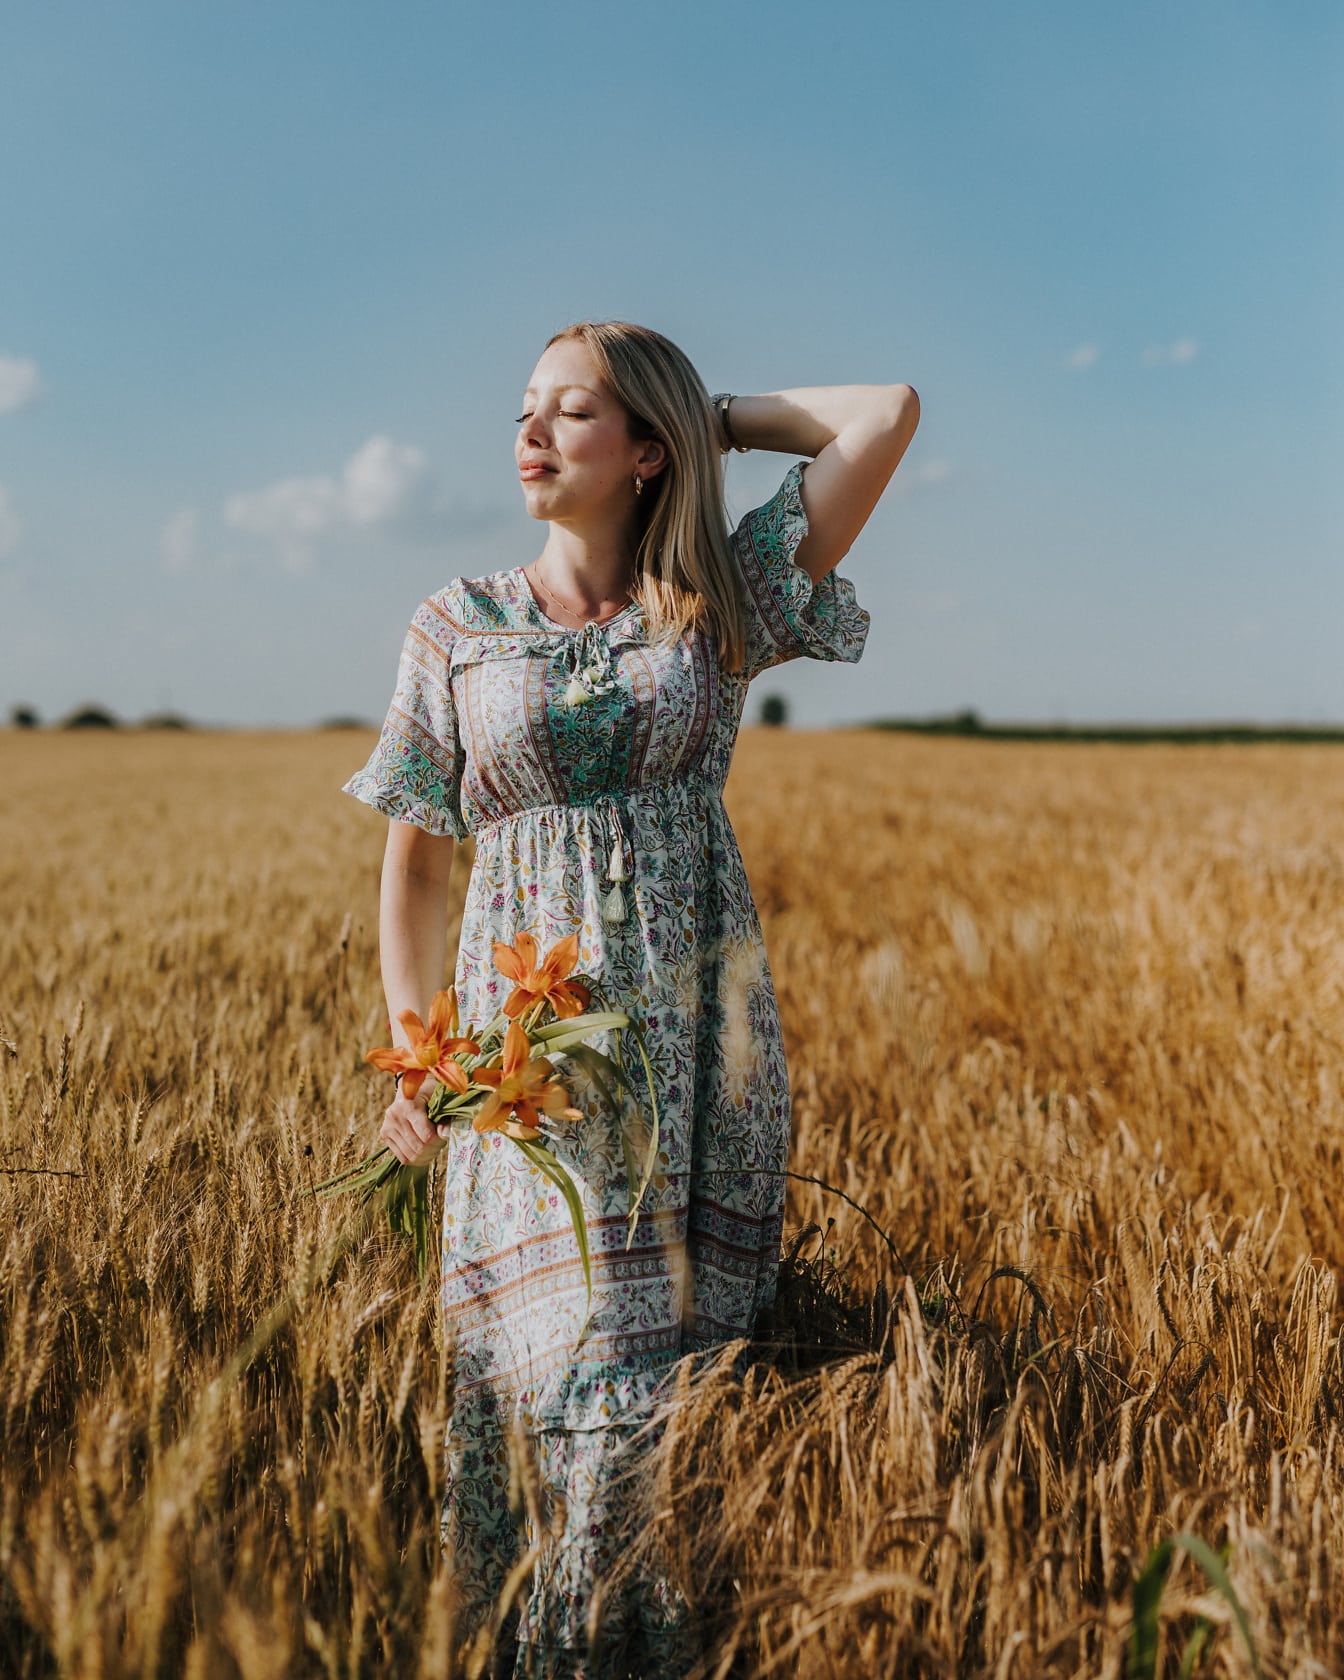 Portræt af en fantastisk smuk blondine i en kjole i landlig stil, der holder blomster i en hvedemark om sommeren